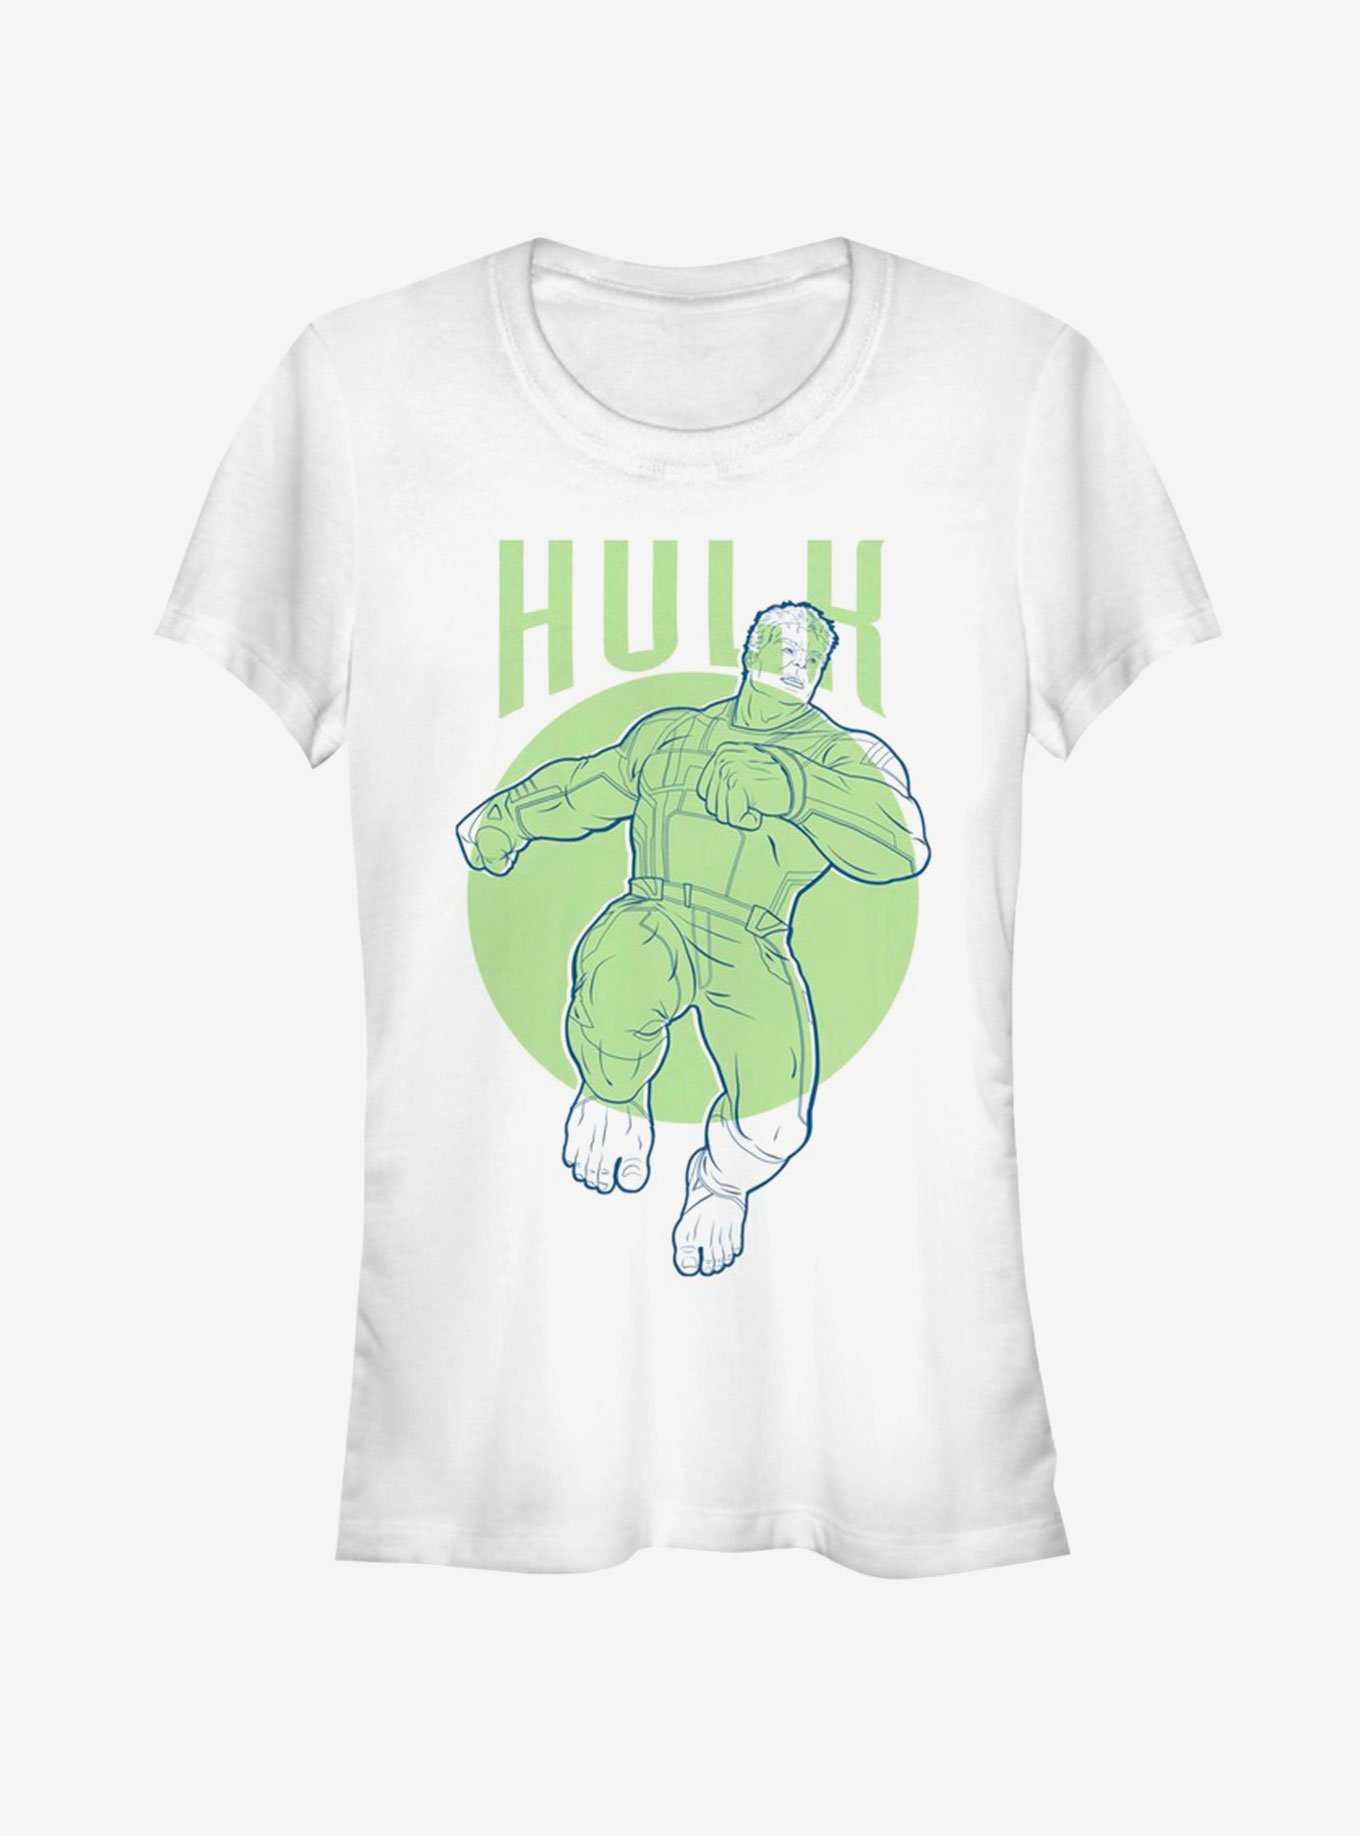 Marvel Avengers Endgame Hulk Simplicity Girls T-Shirt, , hi-res